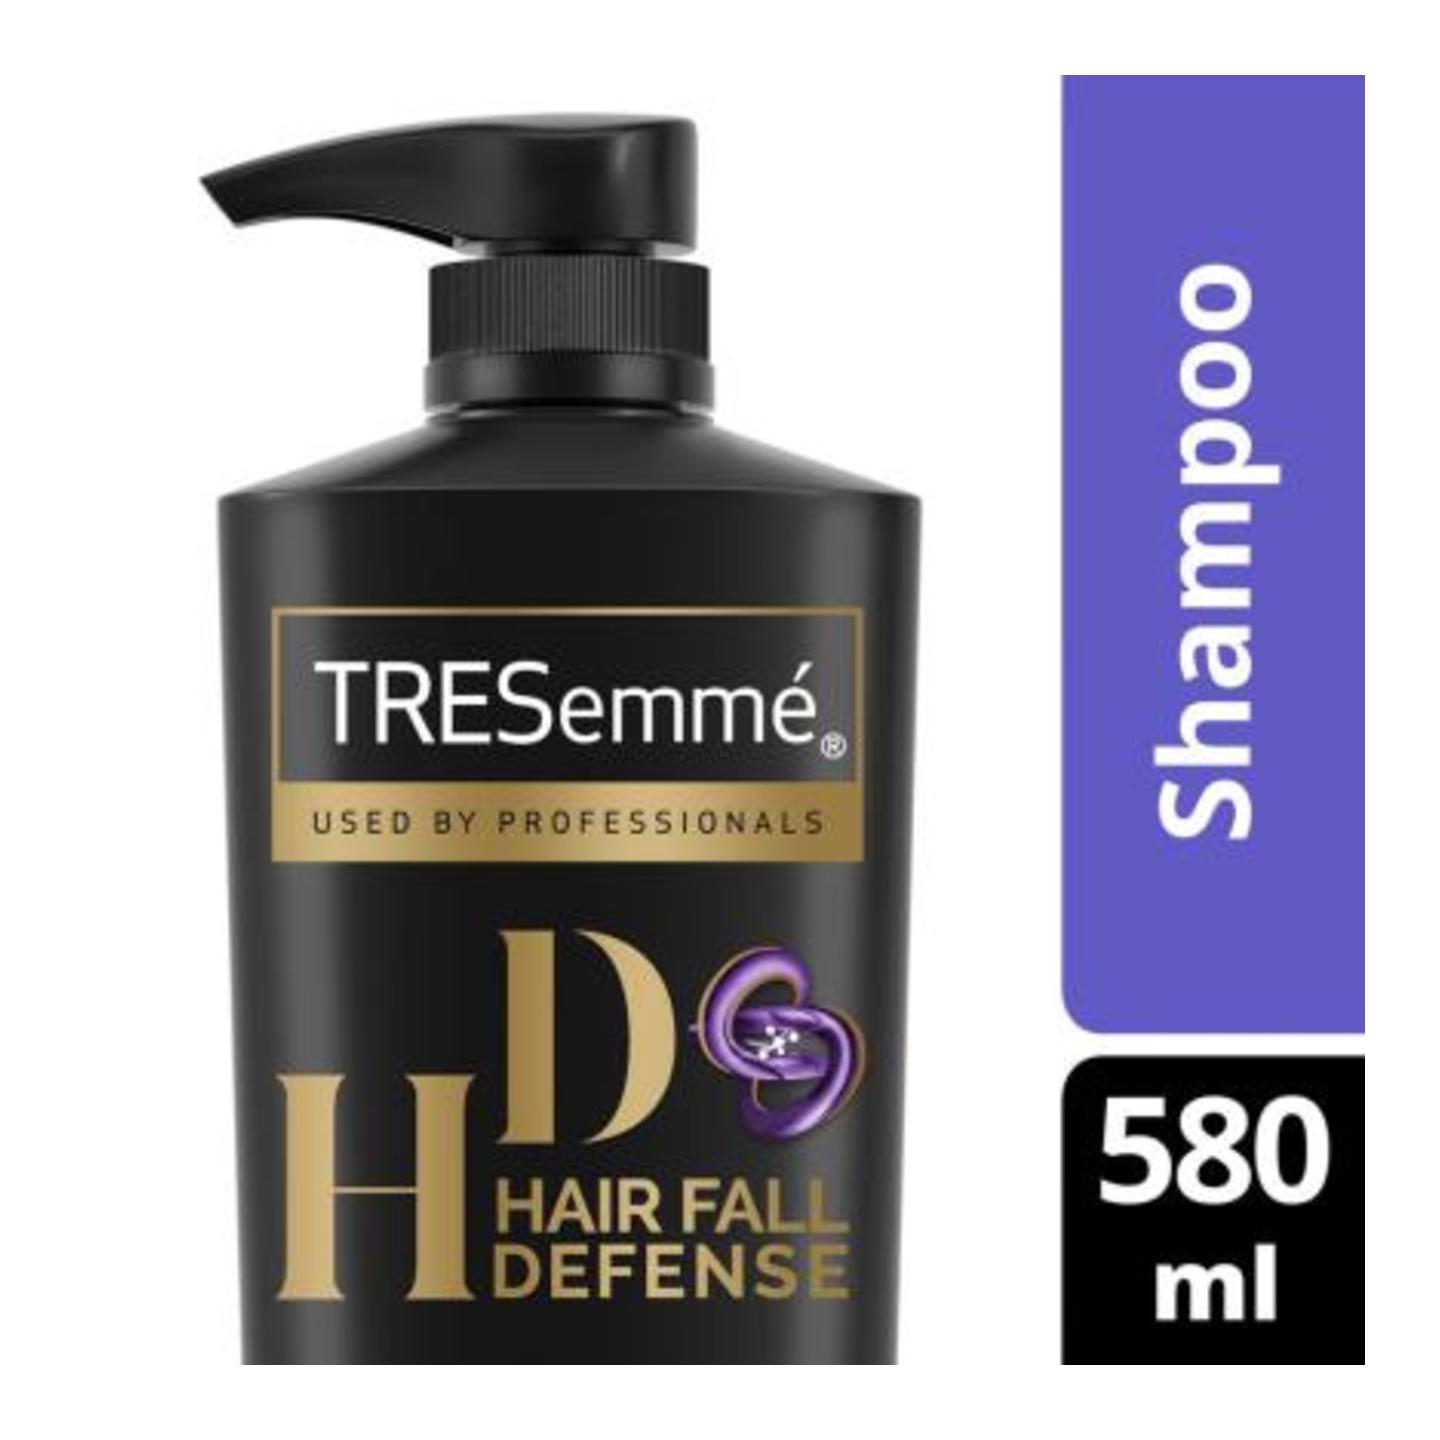 TRESemme Hair Fall Defense Shampoo 580 ml PMBM